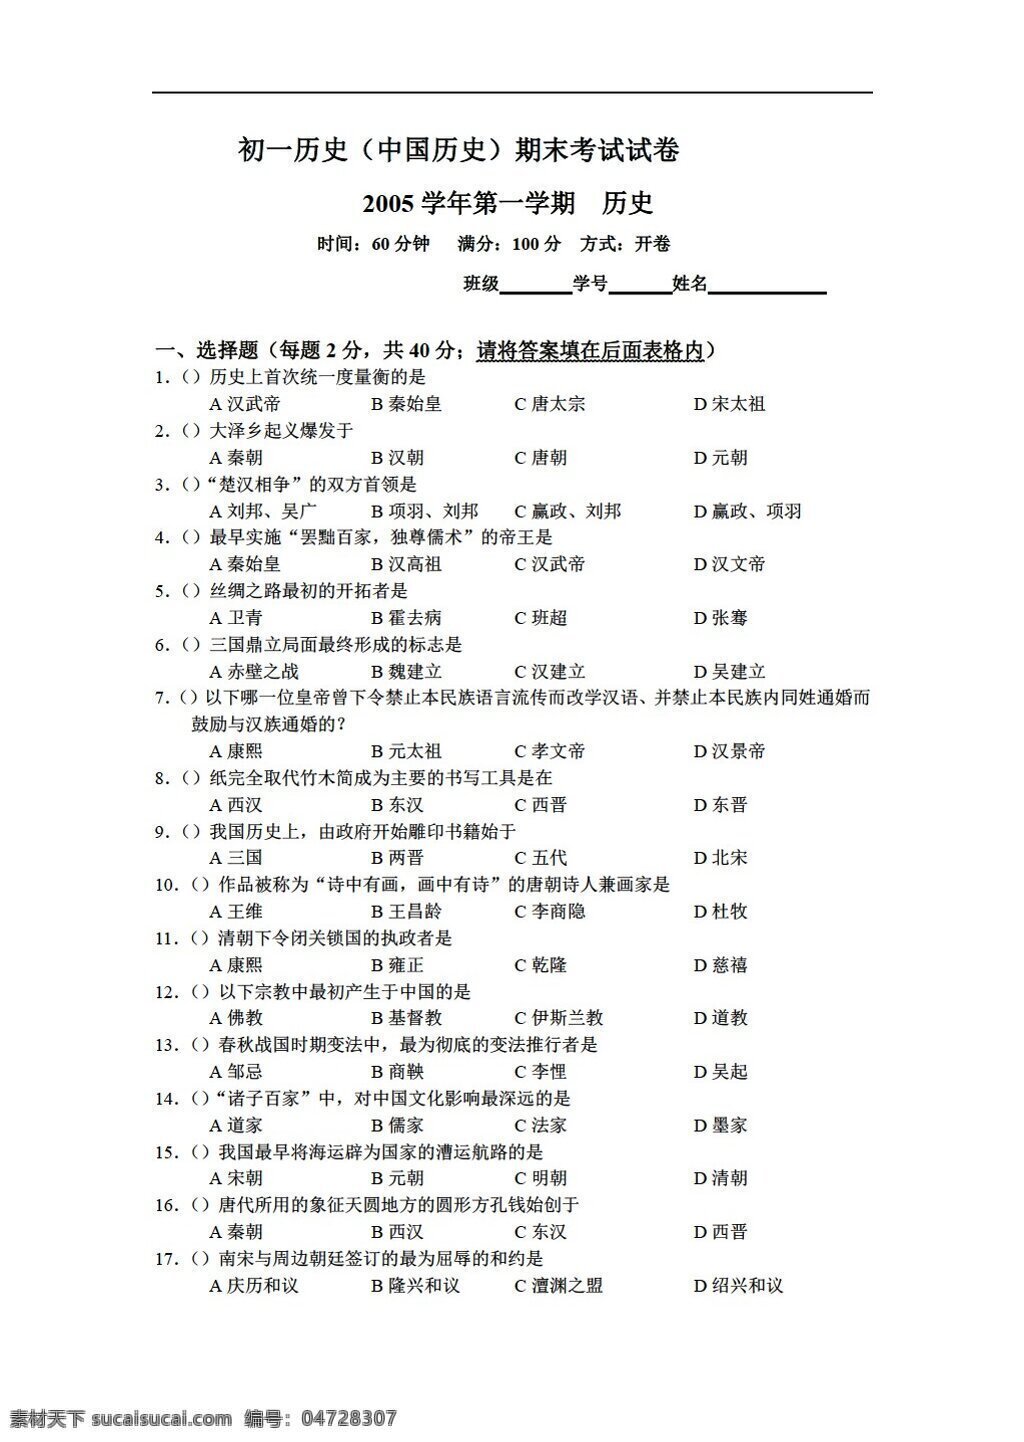 九 年级 下册 历史 初一 中国 期末 考试 试卷 华师大版 九年级下册 试题试卷